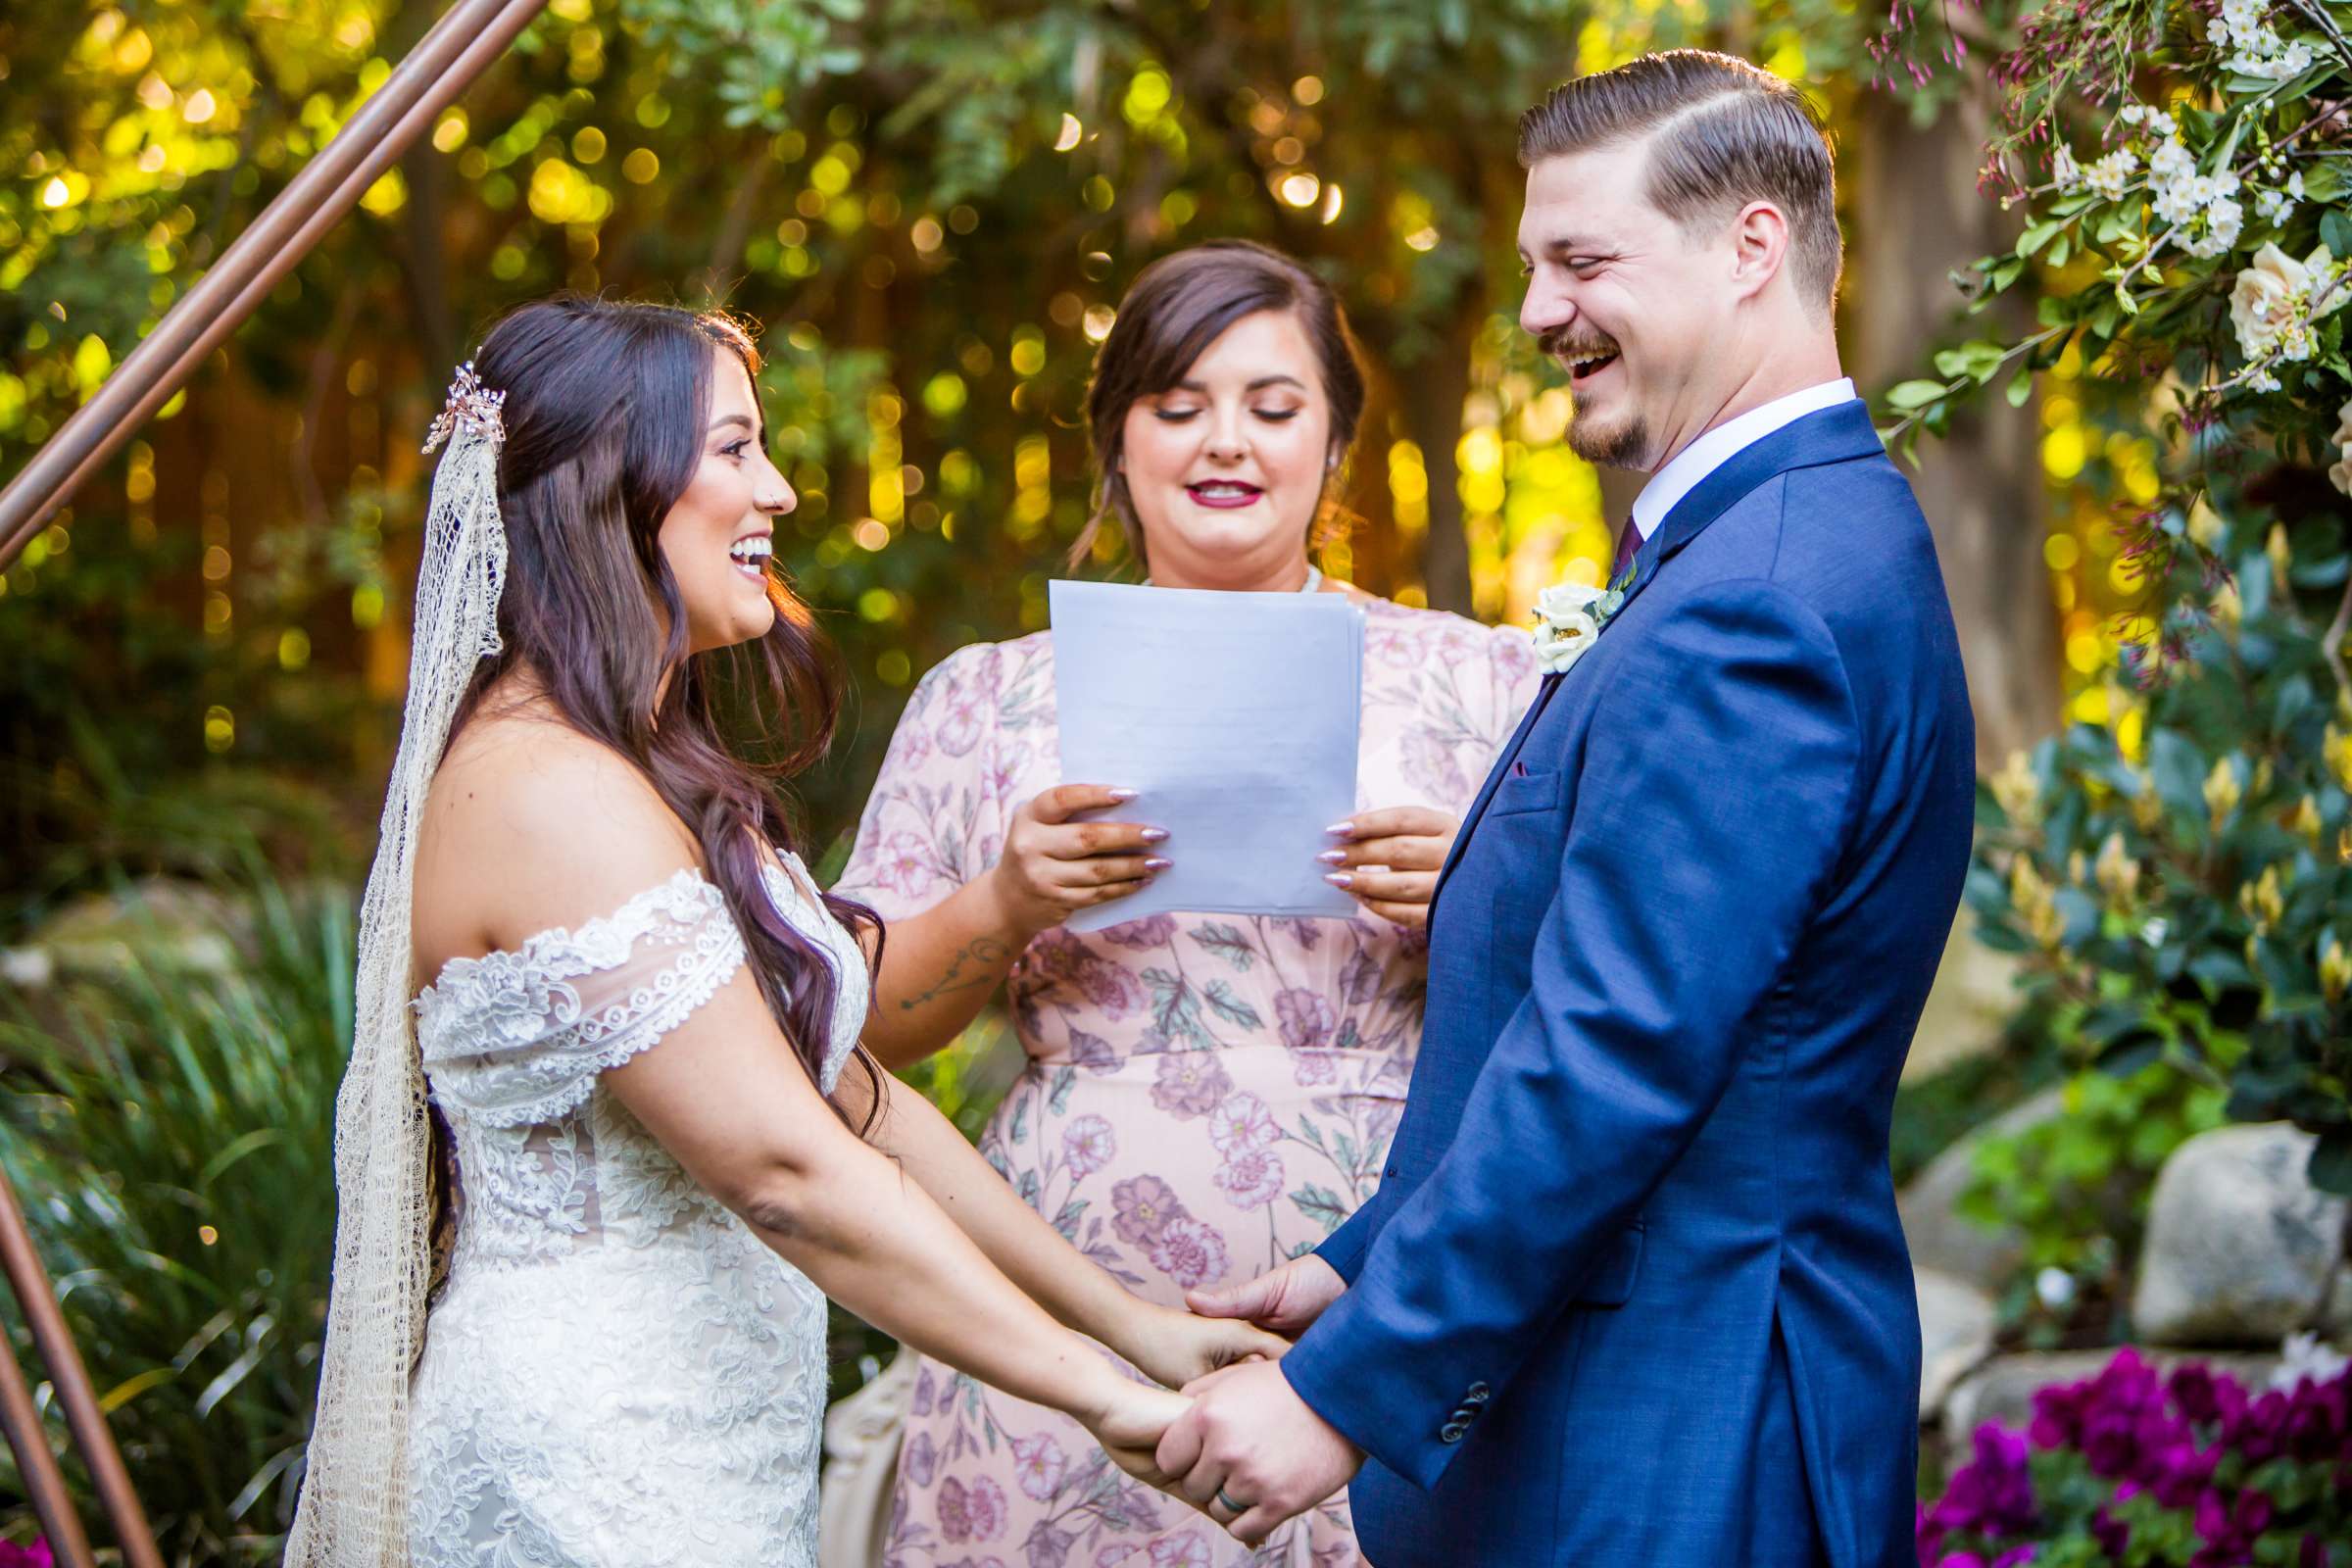 Twin Oaks House & Gardens Wedding Estate Wedding, Stephanie and Ilija Wedding Photo #15 by True Photography